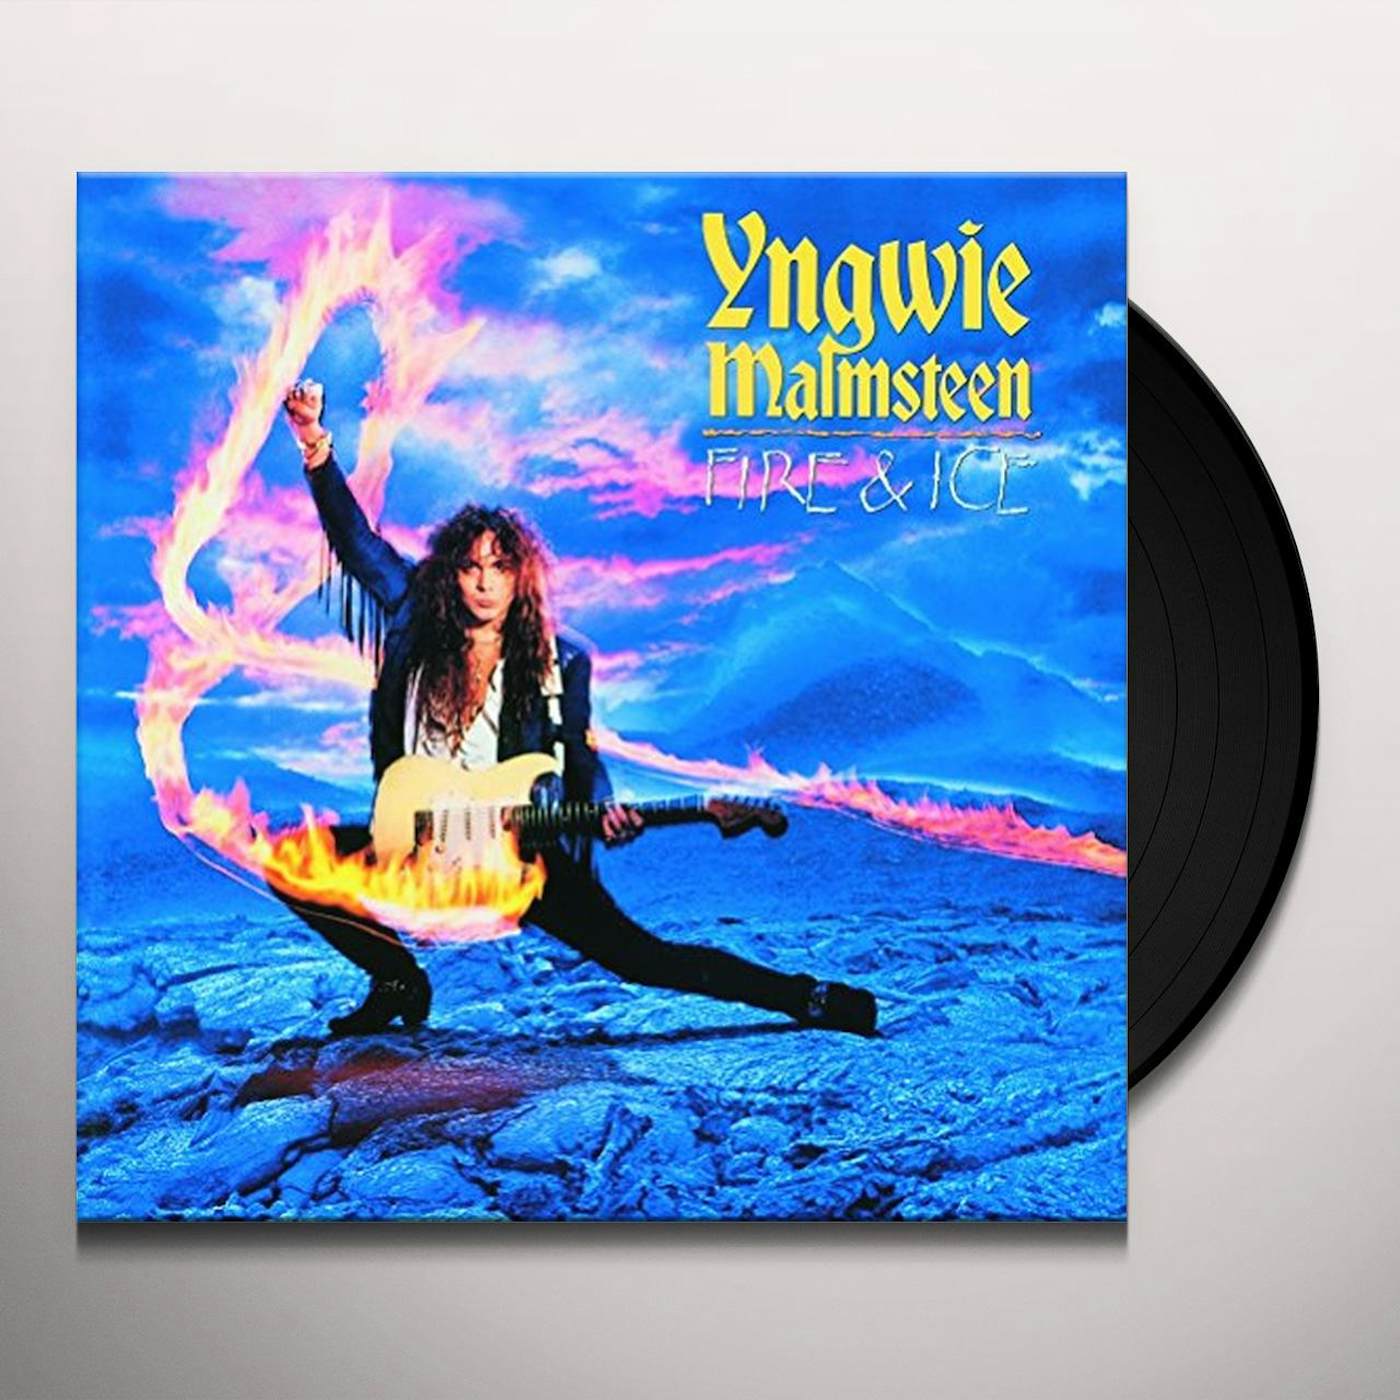 Yngwie Malmsteen Fire & Ice Vinyl Record